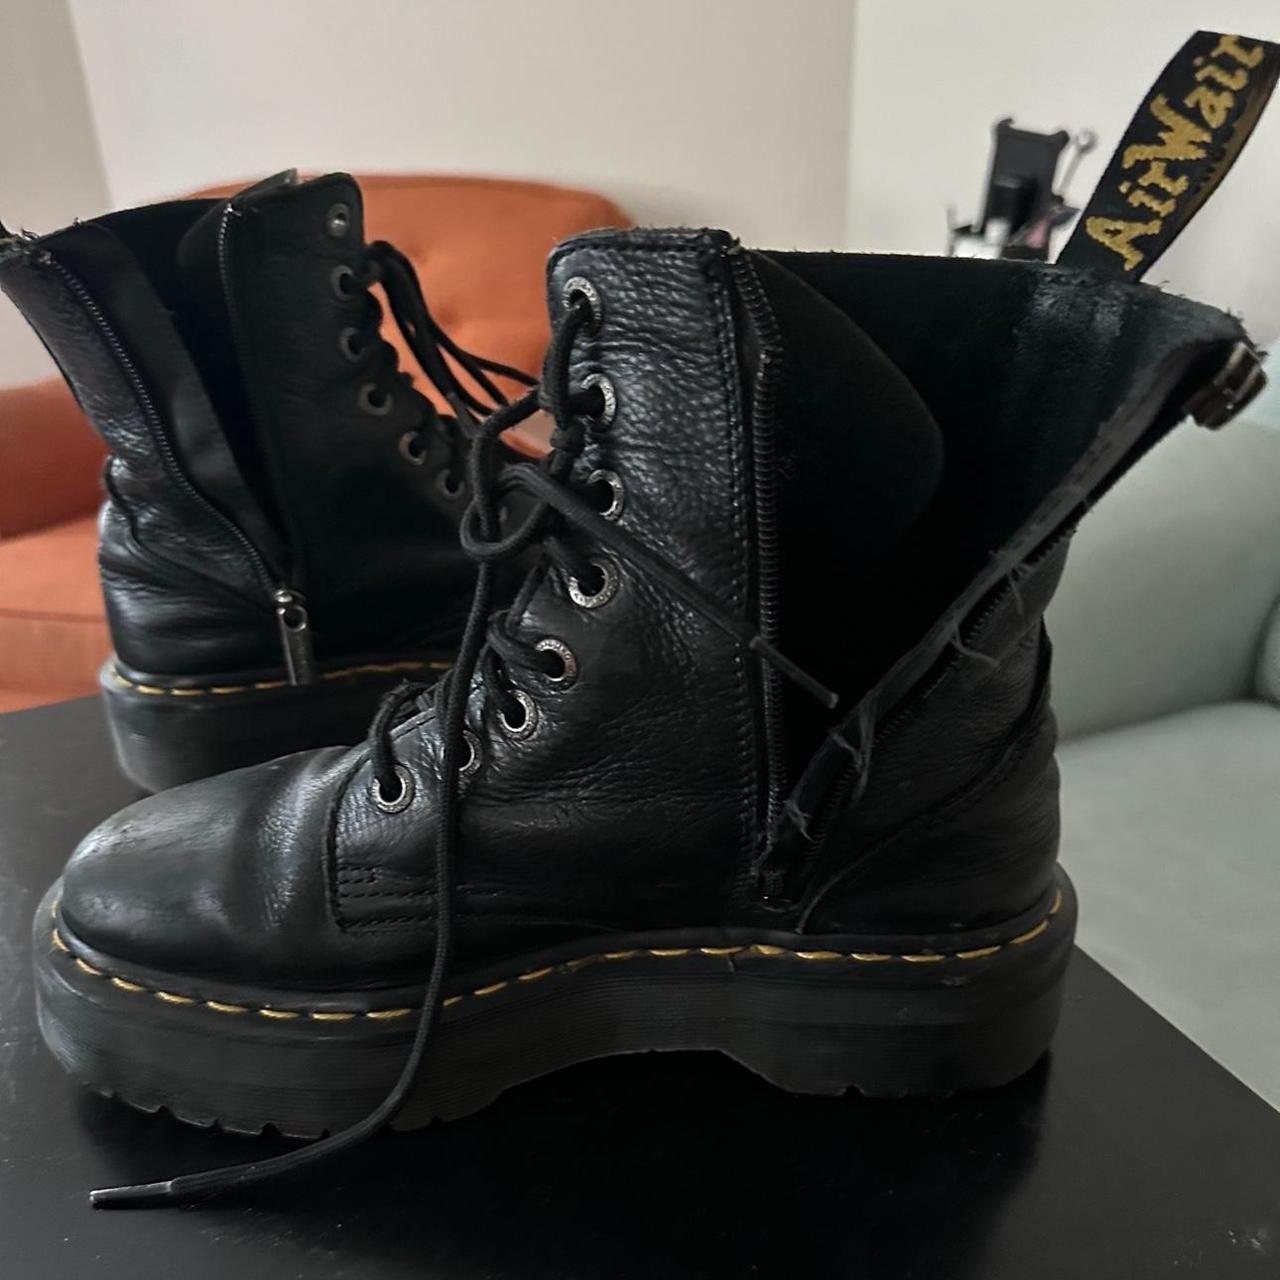 Women’s Doc marten boots Right boot zipper broken... - Depop